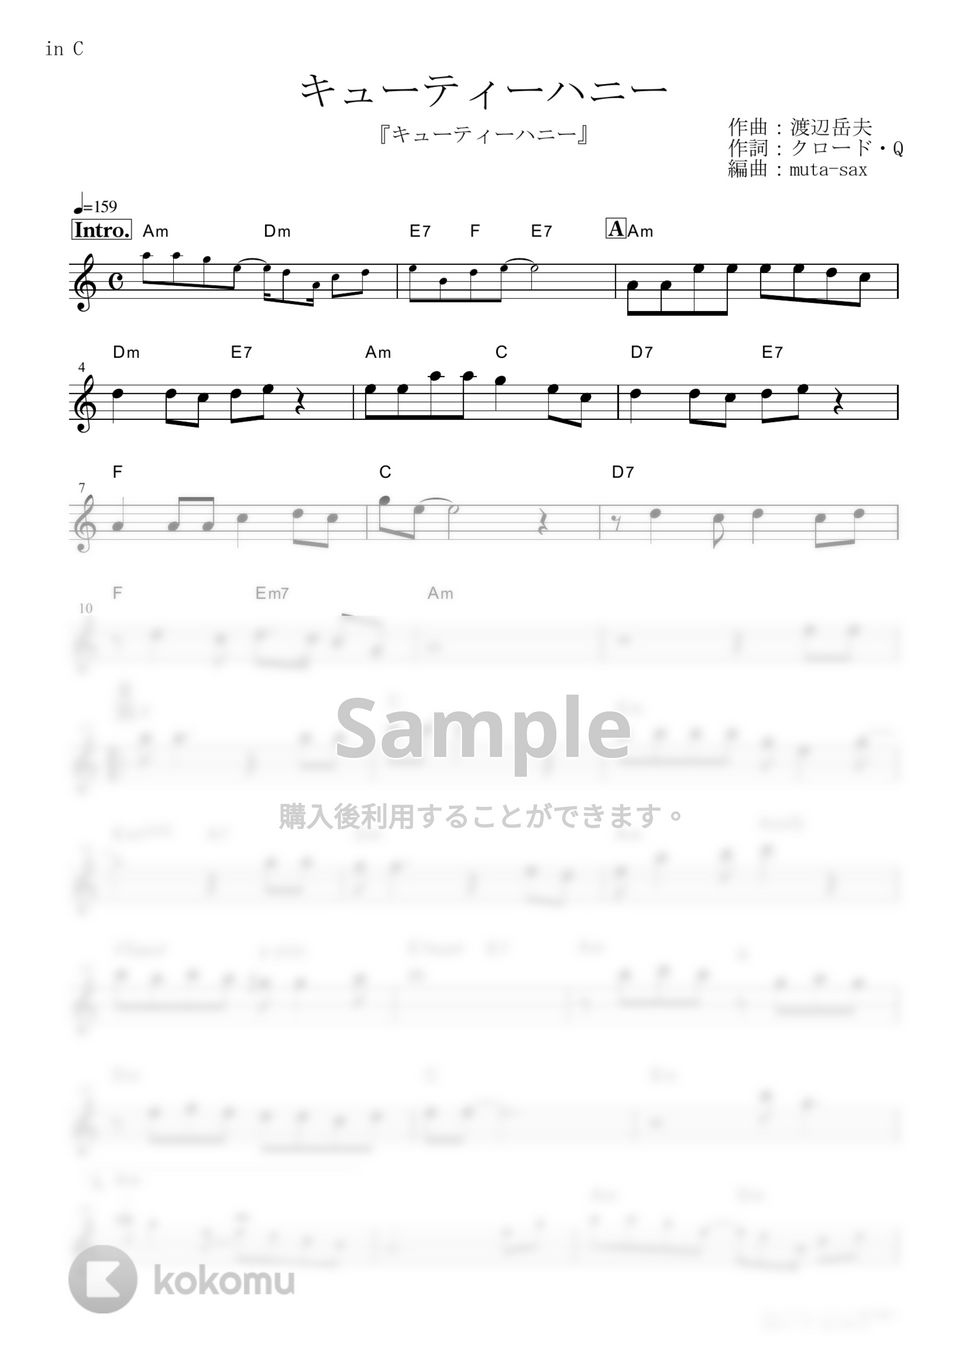 前川陽子 - キューティーハニー (『キューティーハニー』 / in C) by muta-sax